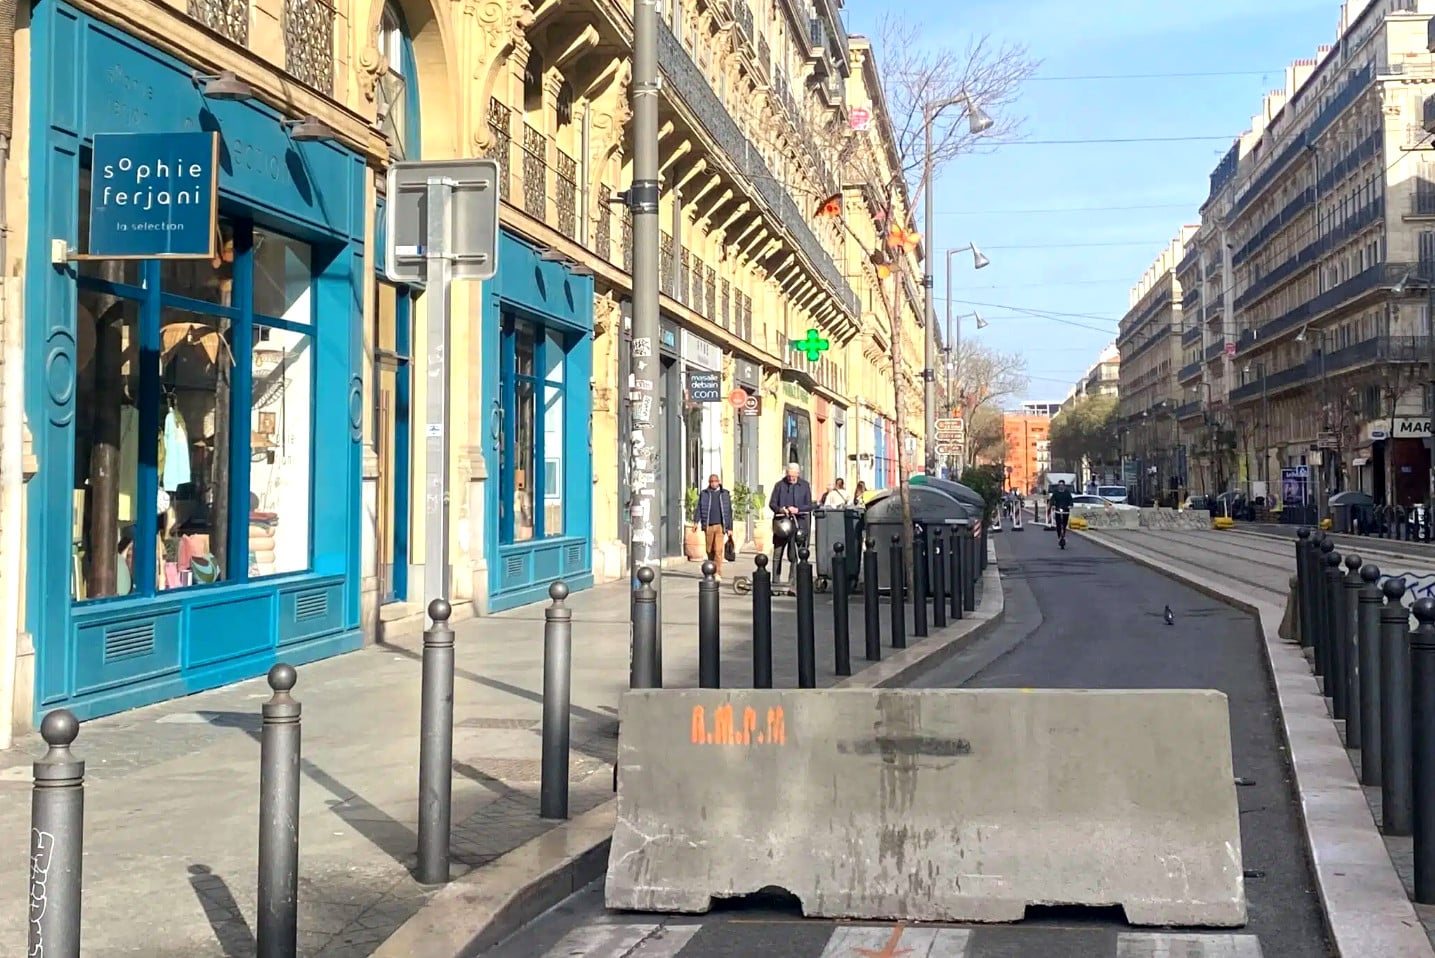 À Marseille, la célèbre boutique de Sophie Ferjani envisage une fermeture mi-avril